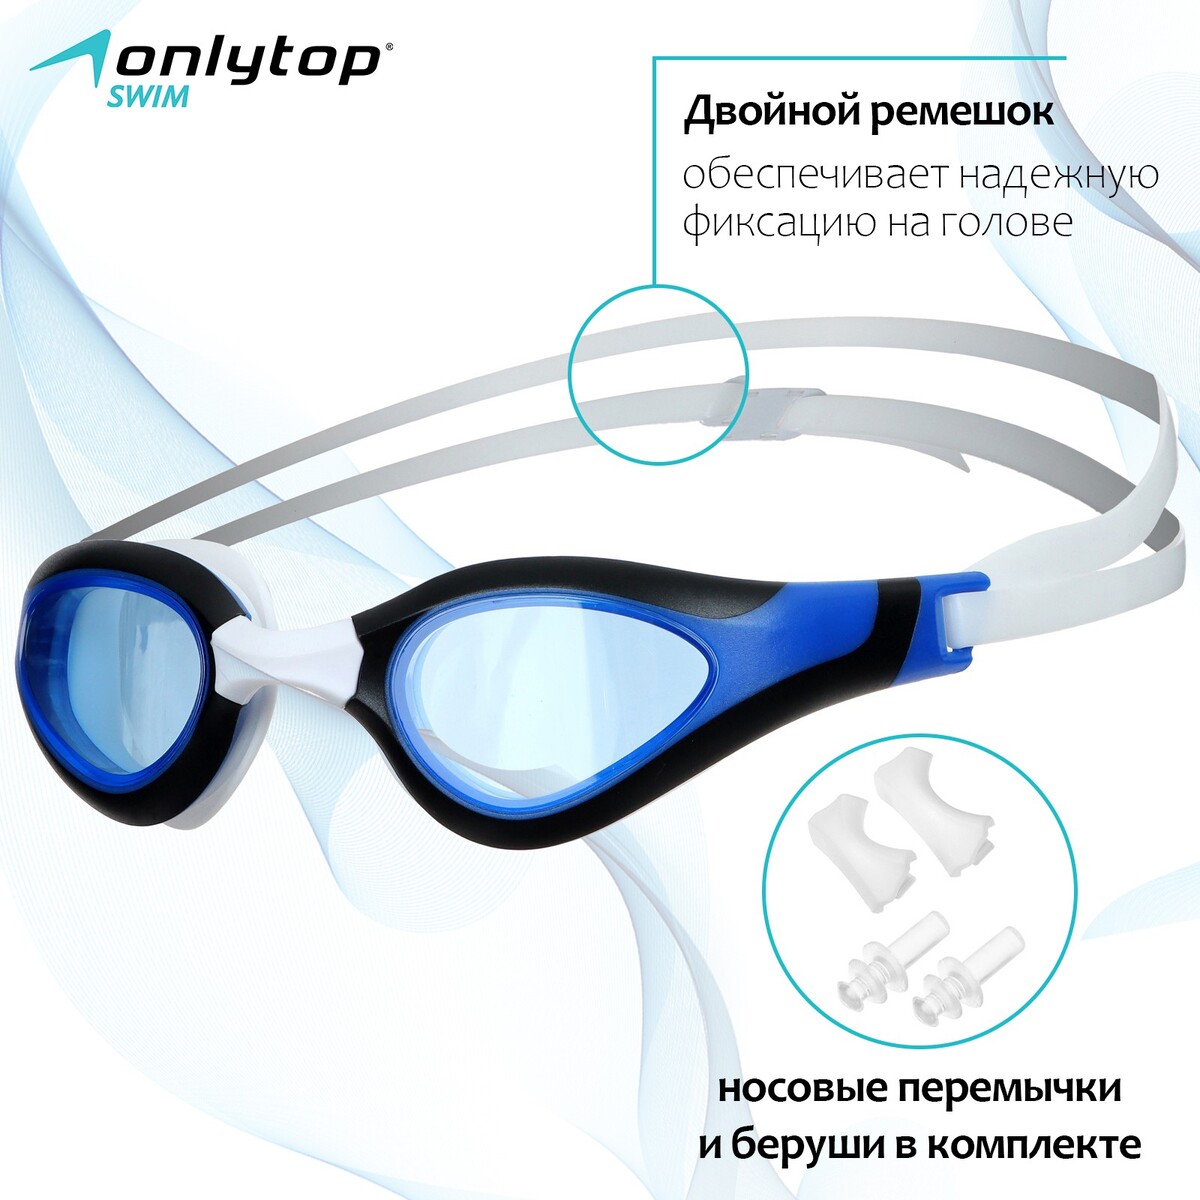 Очки для плавания onlytop, беруши, набор носовых перемычек очки для плавания onlytop беруши набор носовых перемычек uv защита